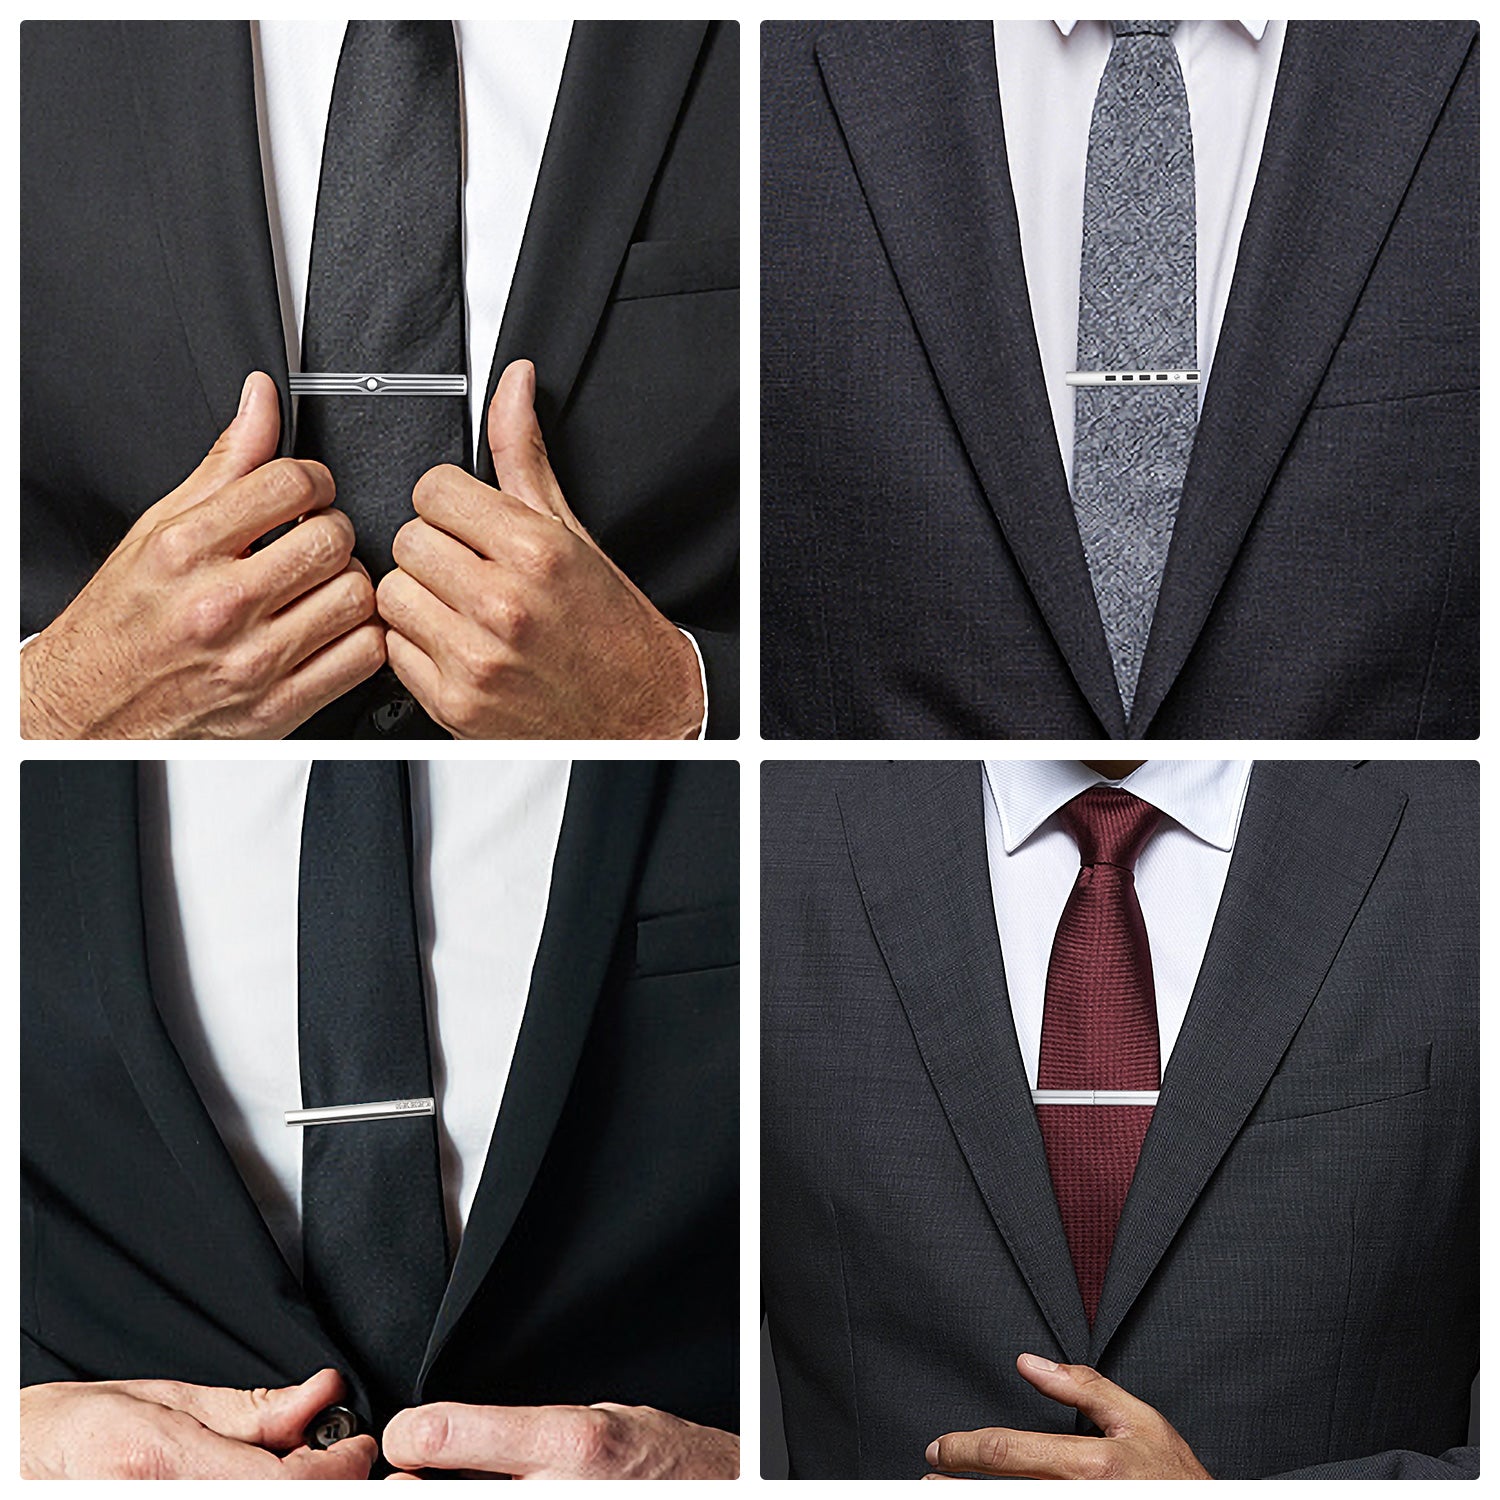 YOITEA 4 Pcs Tie Clips for Men Tie Bar Clip Set for Regular Ties Necktie  Wedding Business Clips 